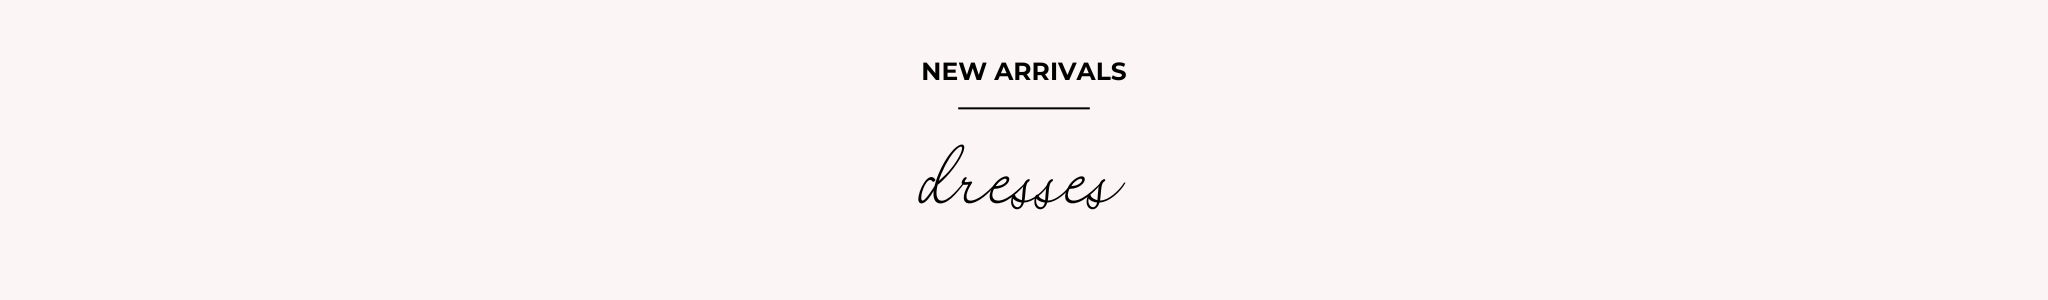 NEW ARRIVALS - DRESSES